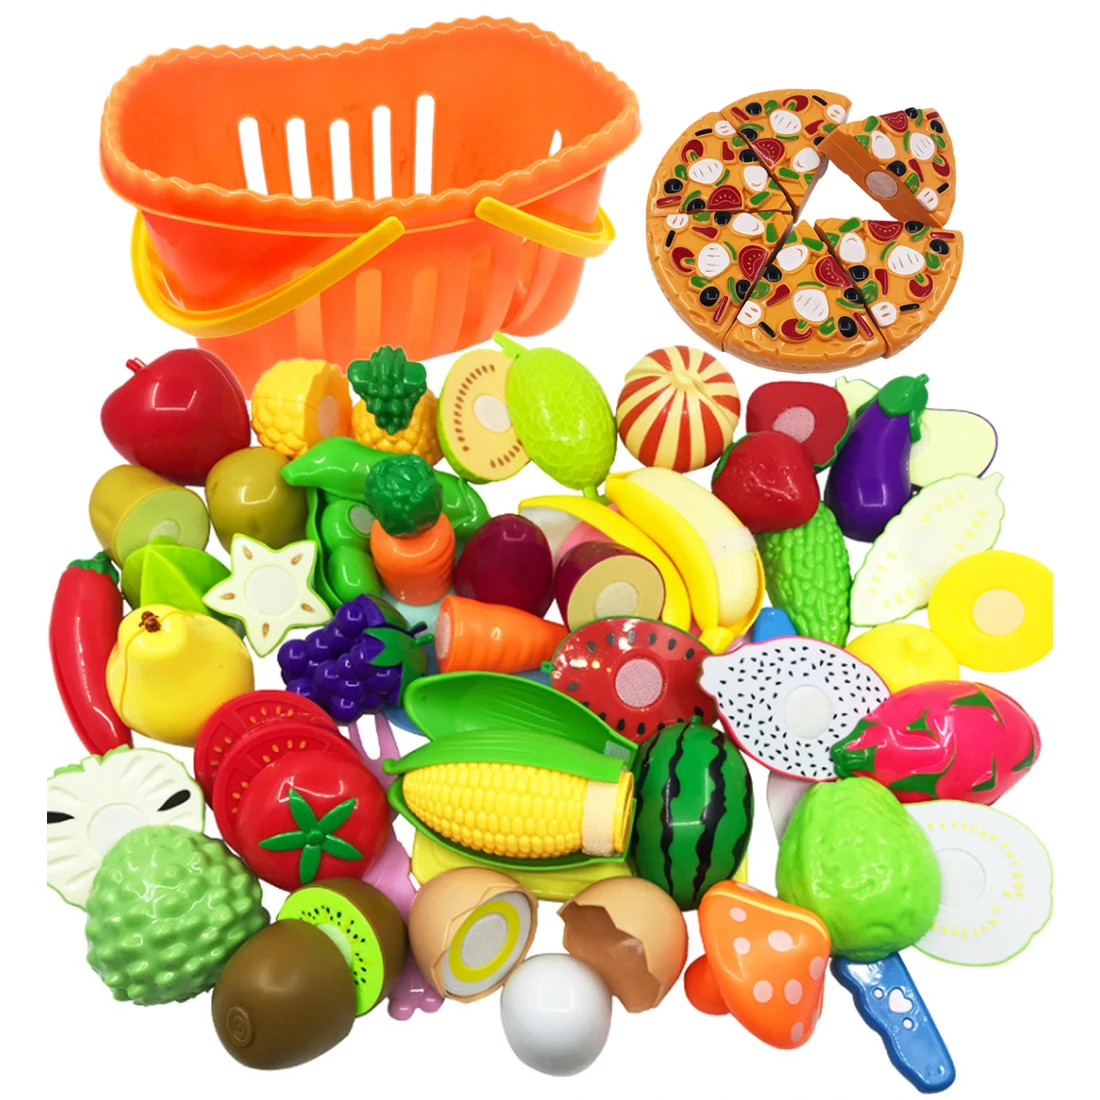 40 шт. ролевые игры, Обучающие кухонные игрушки для детей, Детский игровой набор для резки овощей и фруктов, подарок для детей